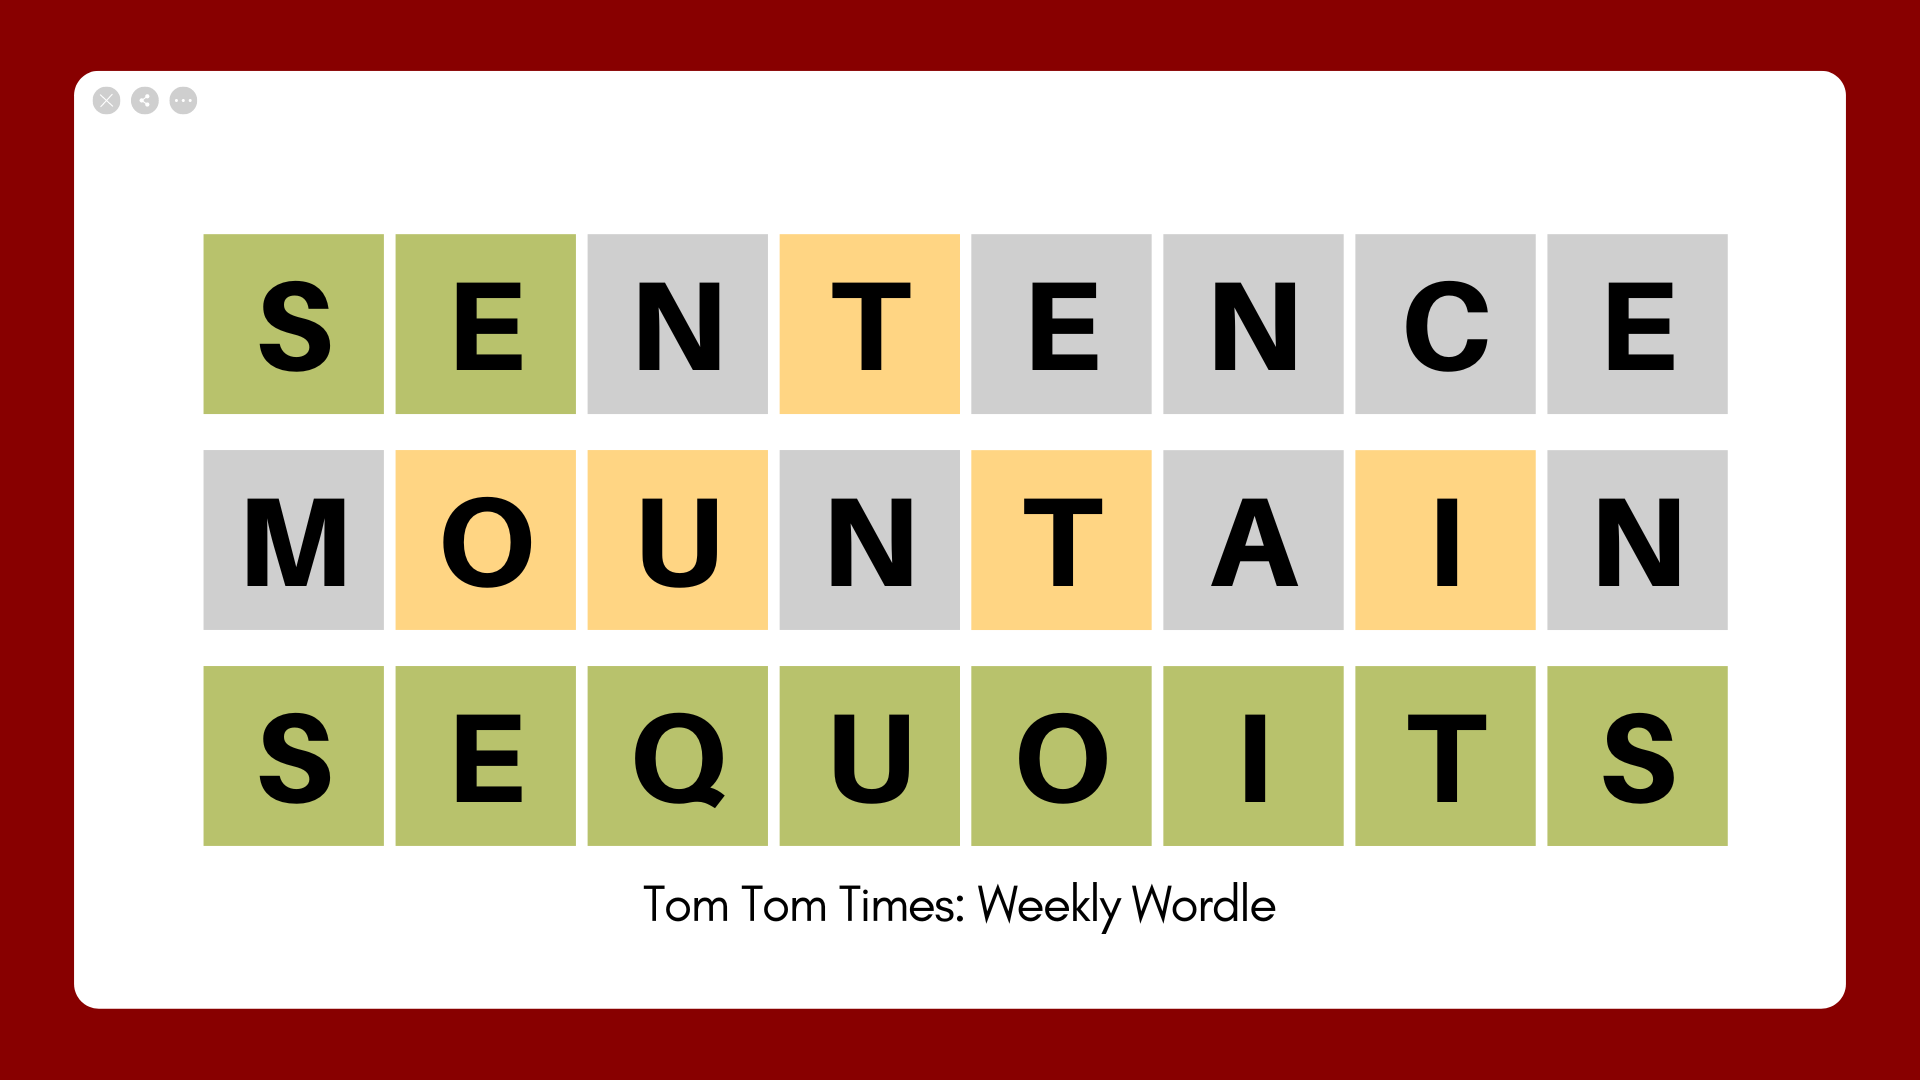 Tom Tom Times: Weekly Wordle 05